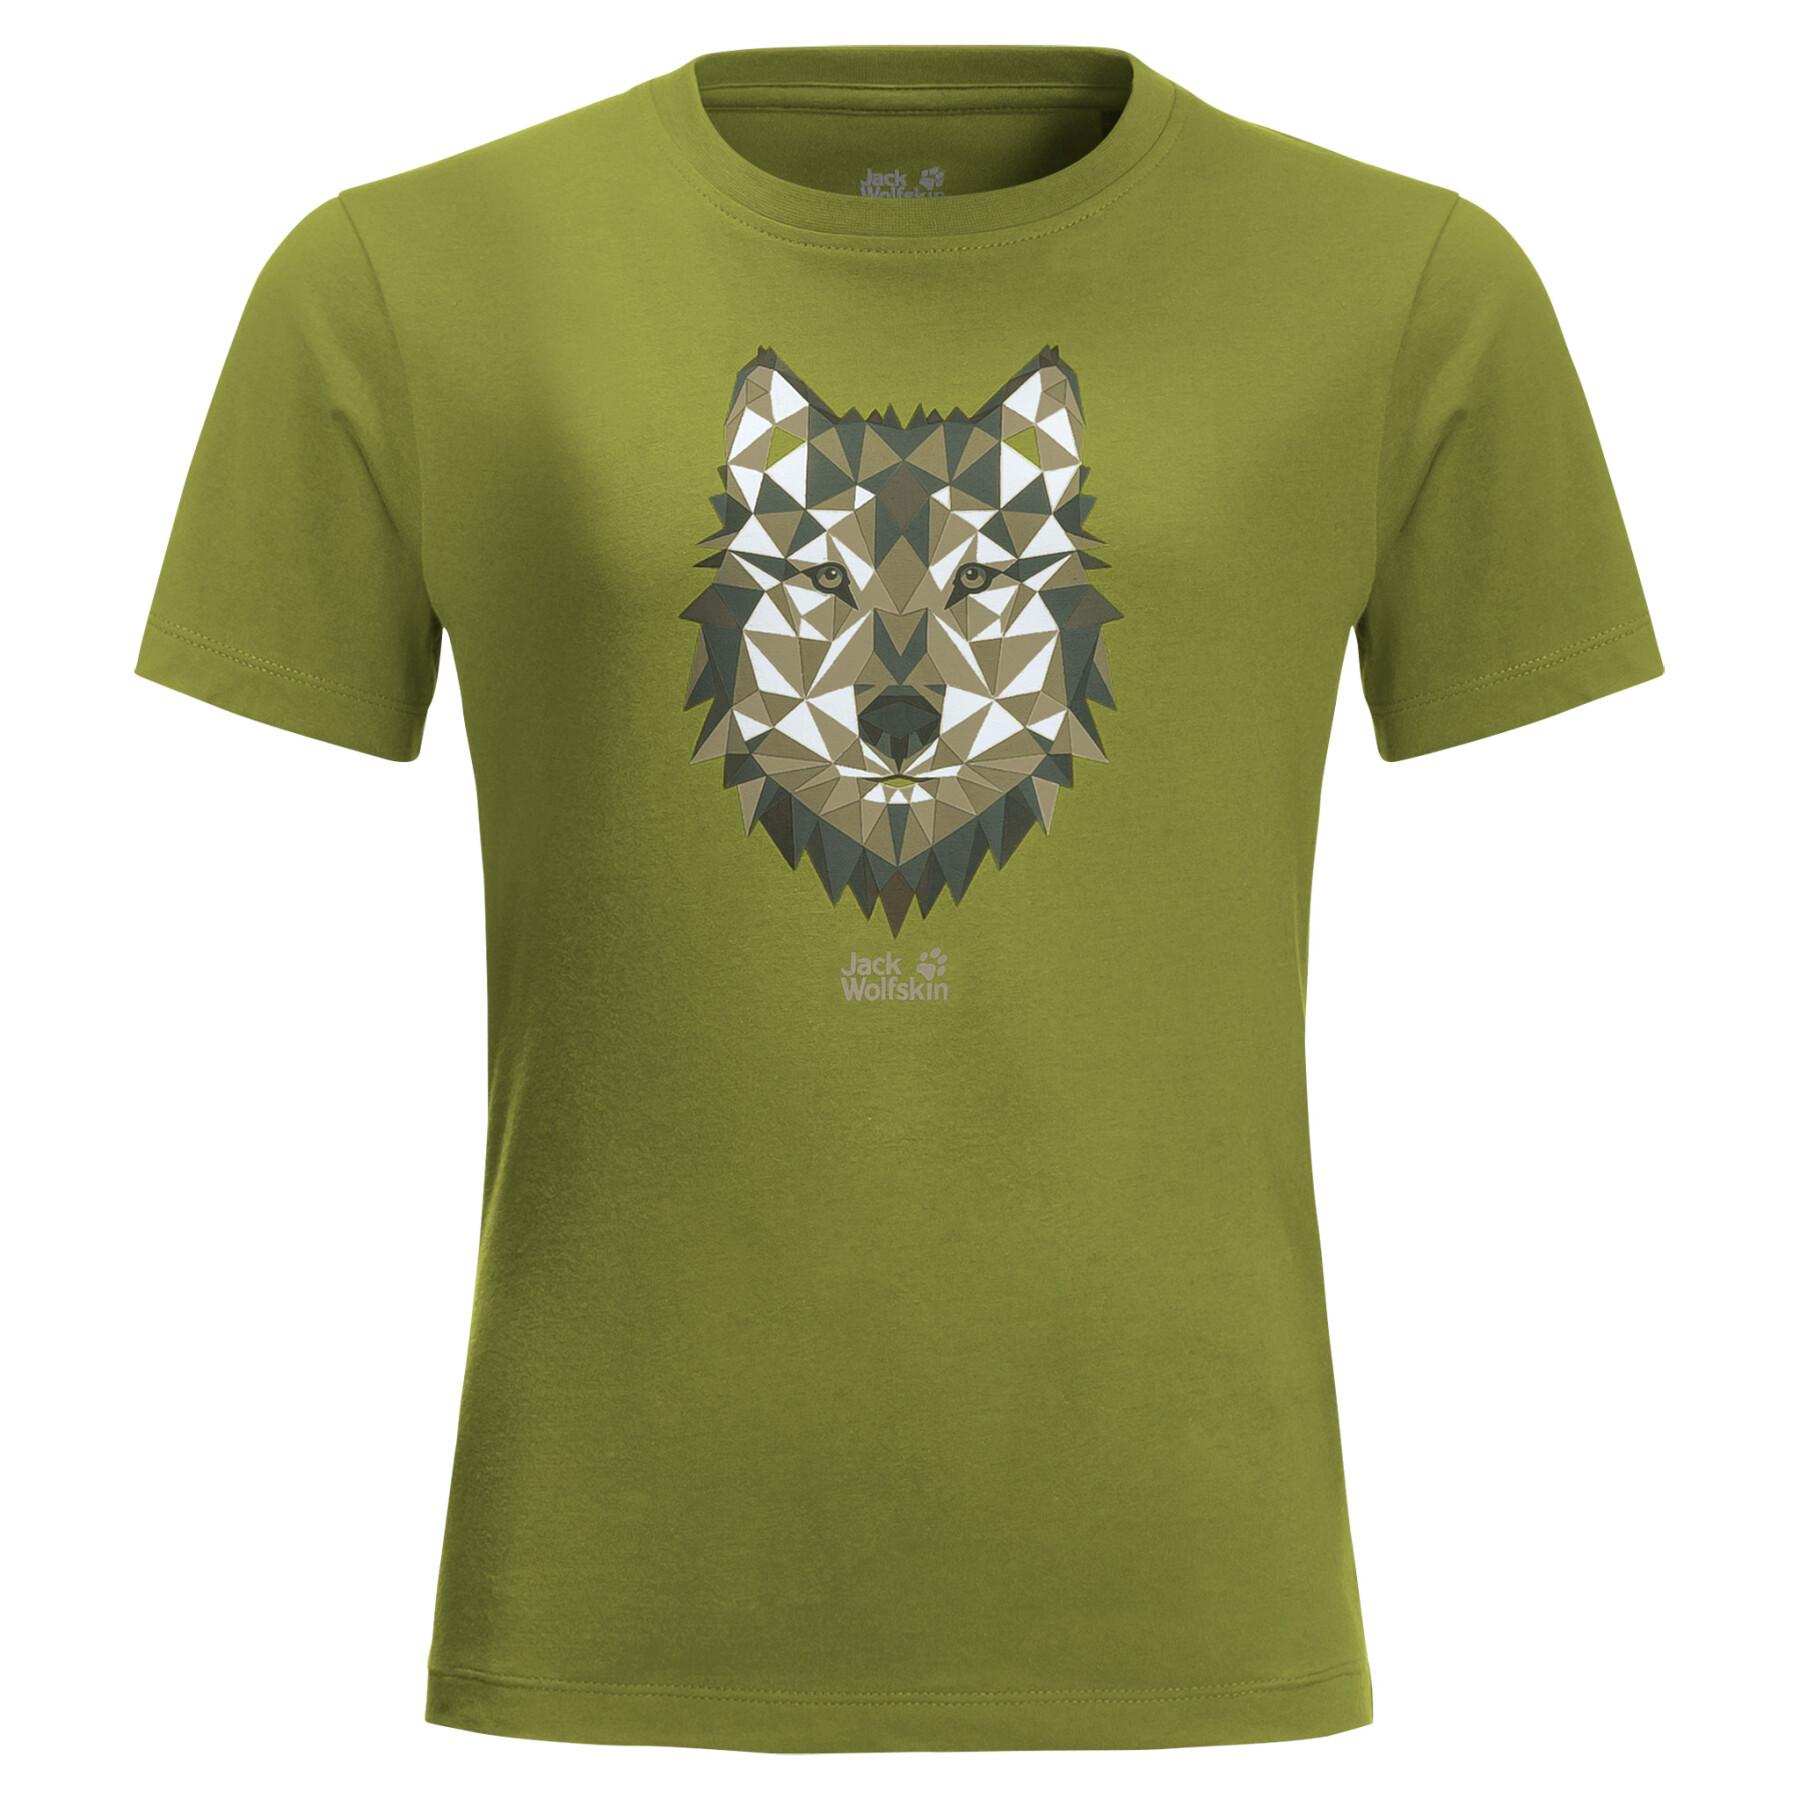 T-shirt de criança Jack Wolfskin Brand Wolf